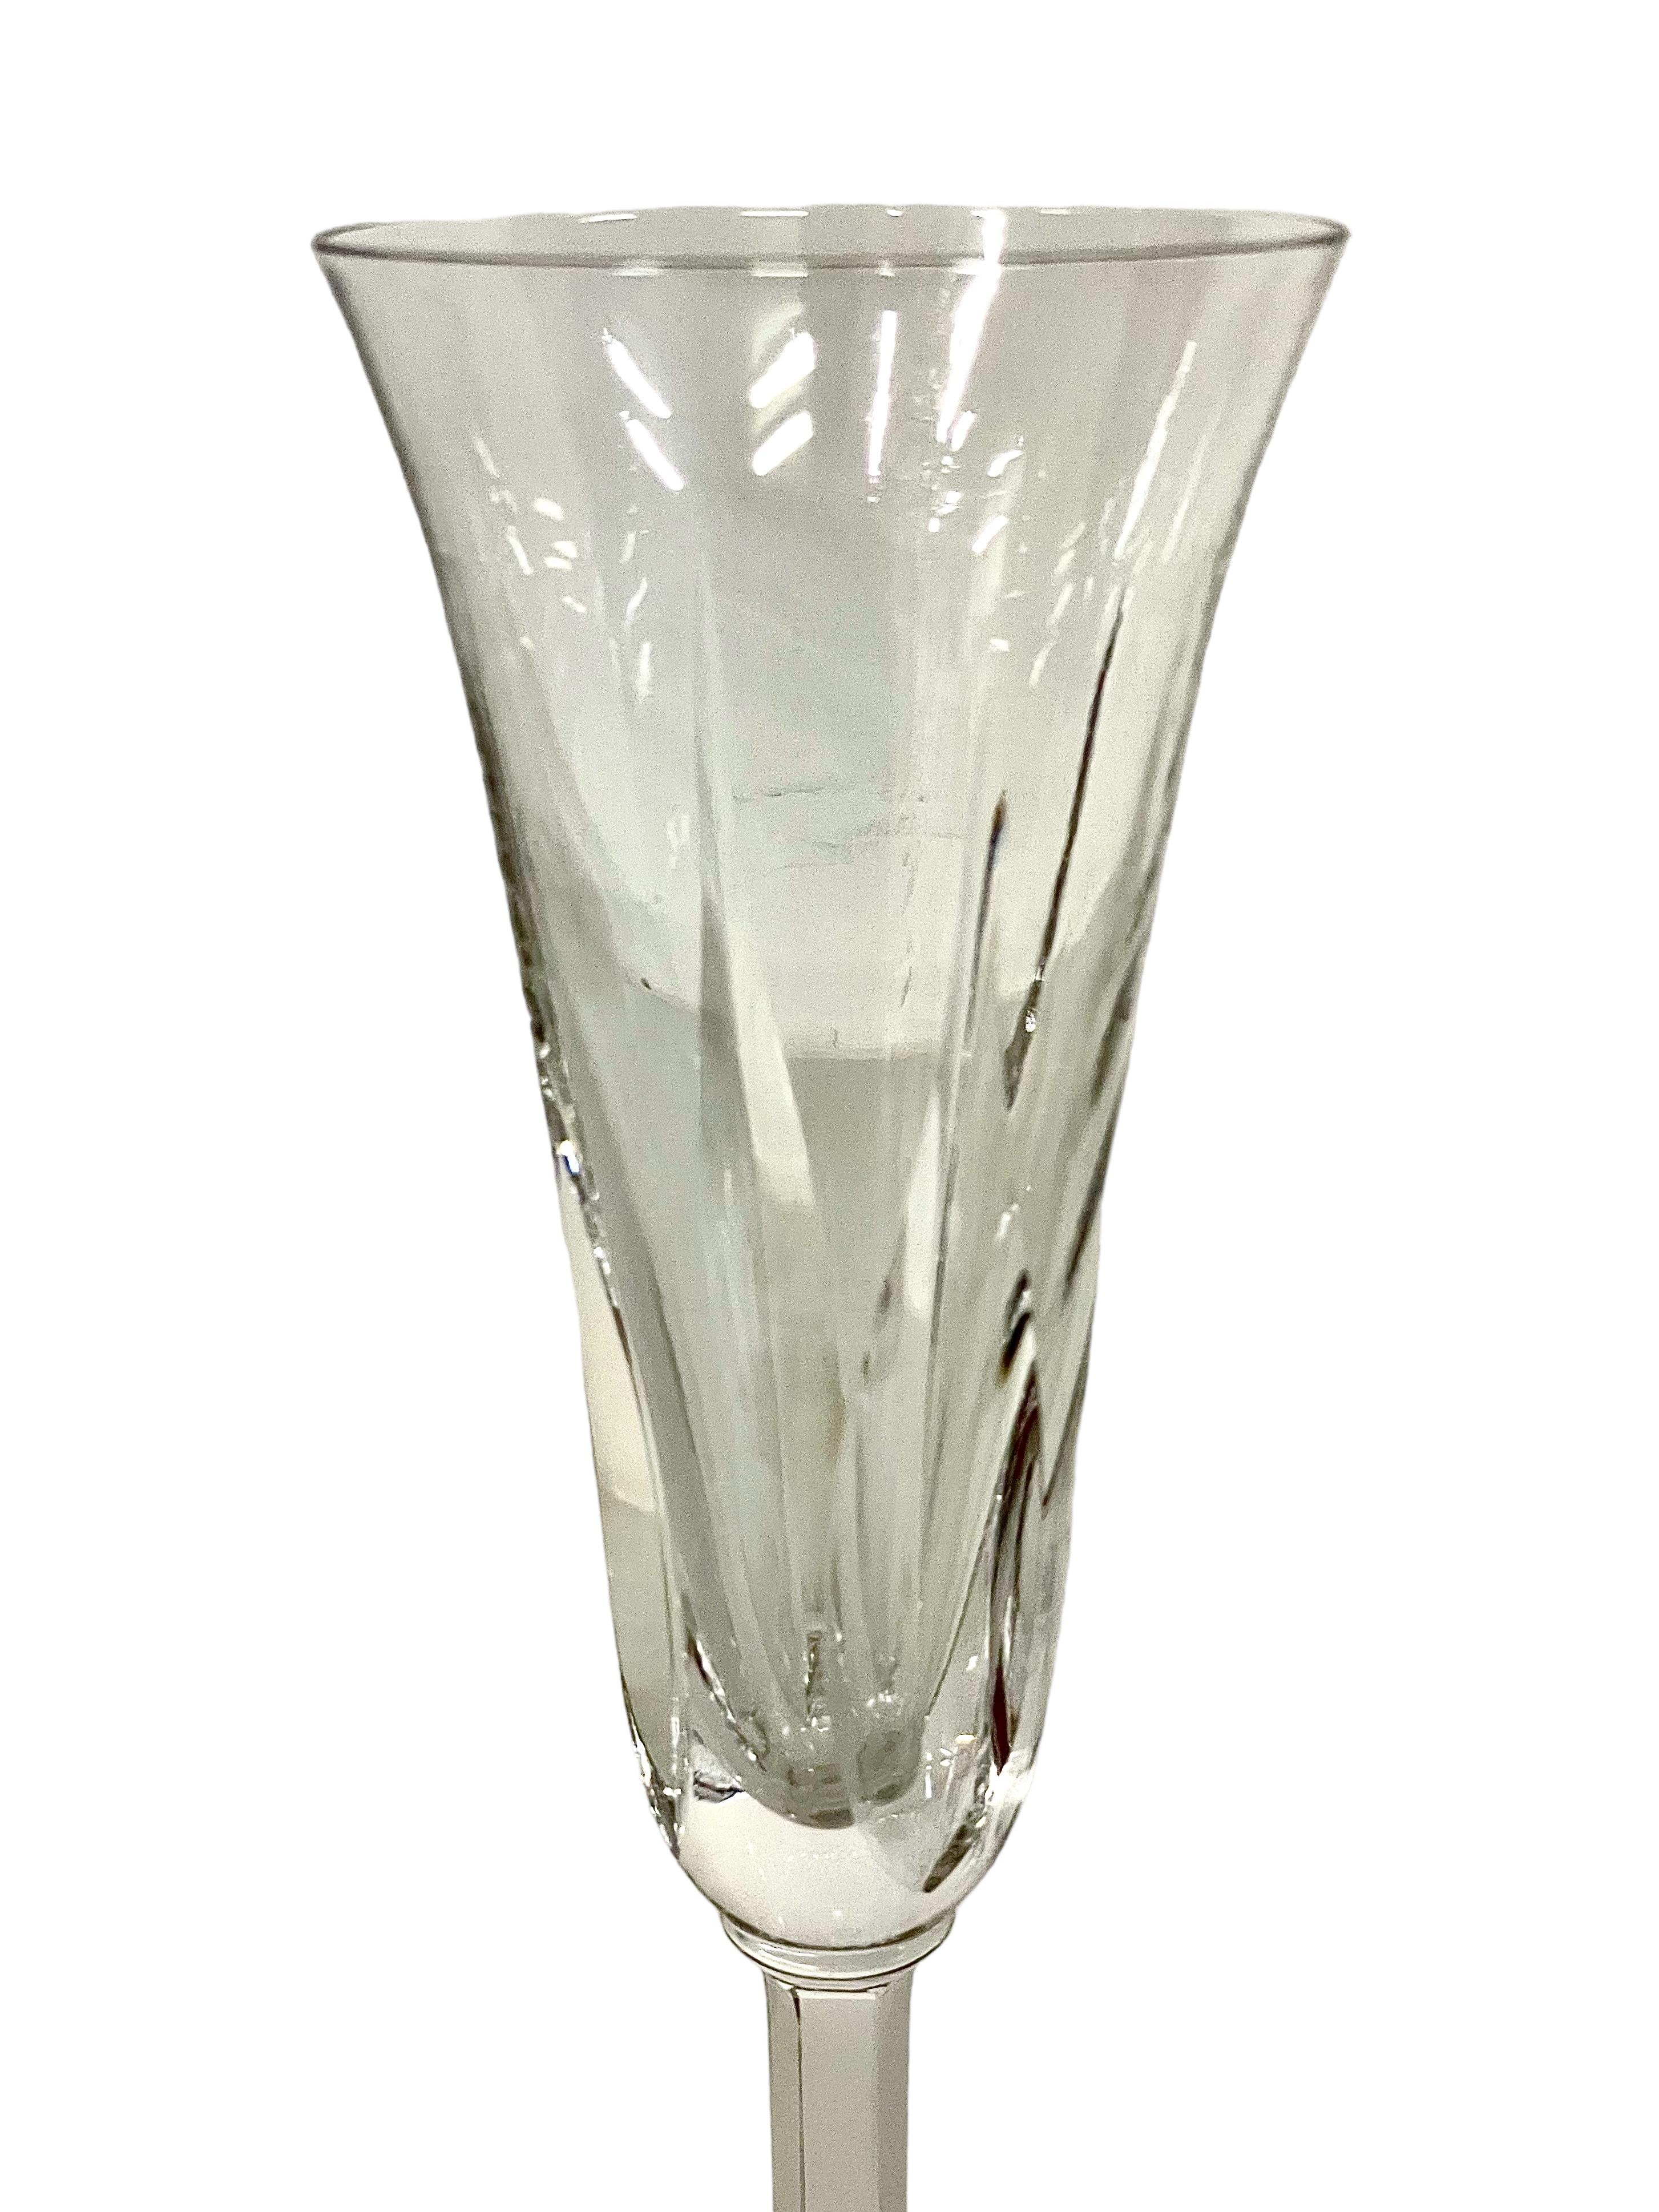 Ein außergewöhnliches Set aus acht Champagnerflöten aus funkelndem Saint-Louis-Kristall. Der tulpenförmige Kelch ist jeweils mit hohen und spitzen Rauten versehen, während der Stiel elegante, flache Rippen aufweist. Die Gläser sind alle mit dem